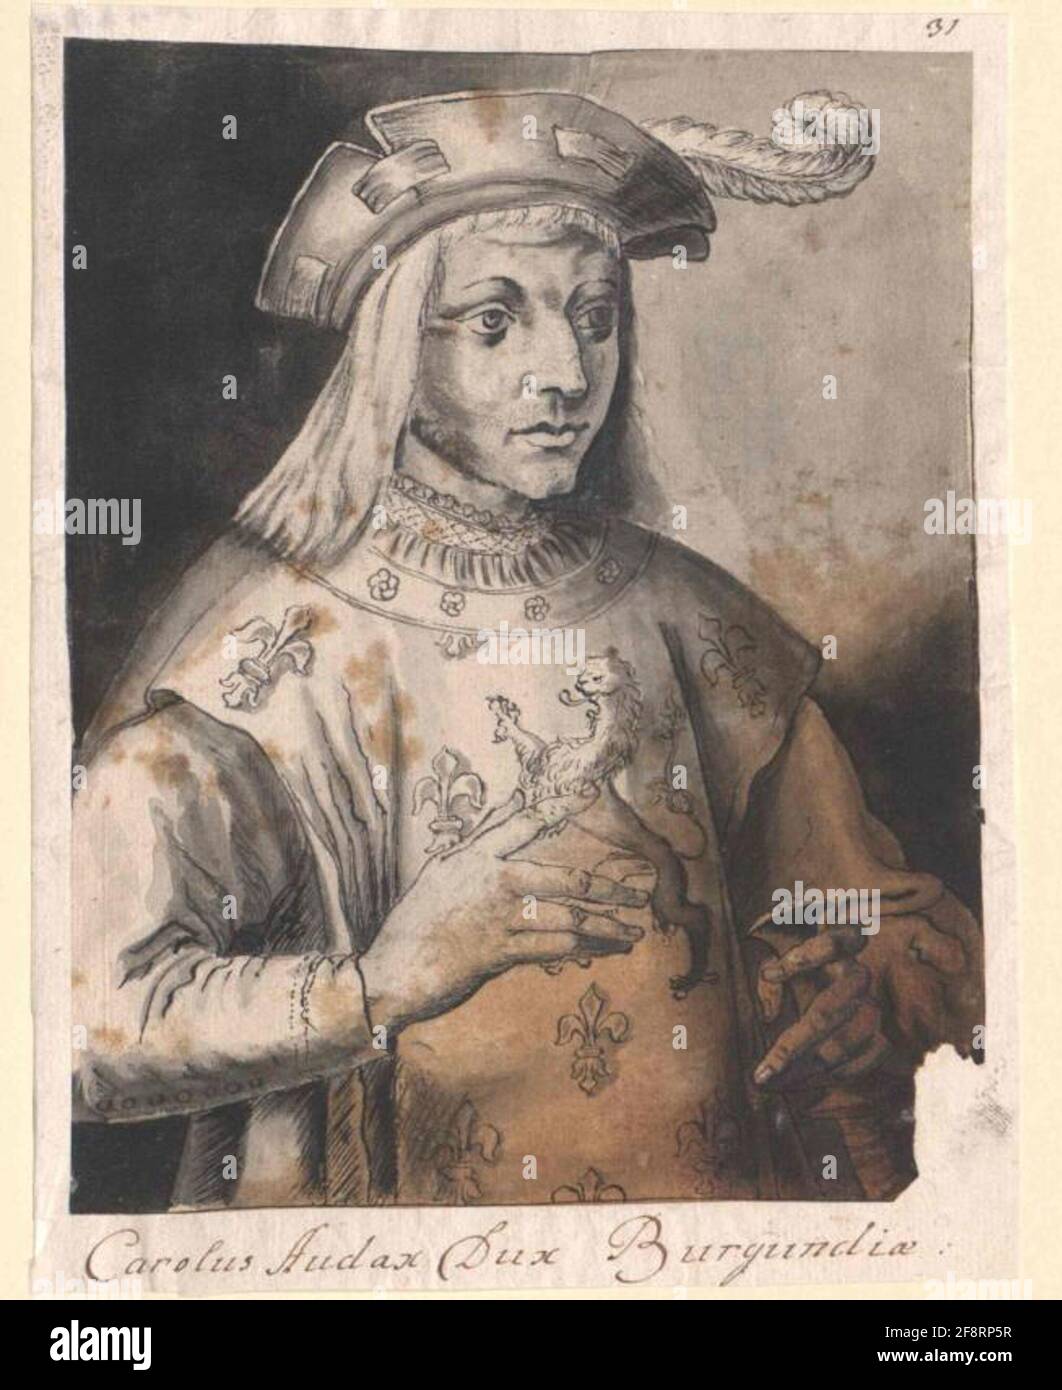 Karl of Kühne, Duke of Burgundy. Stock Photo